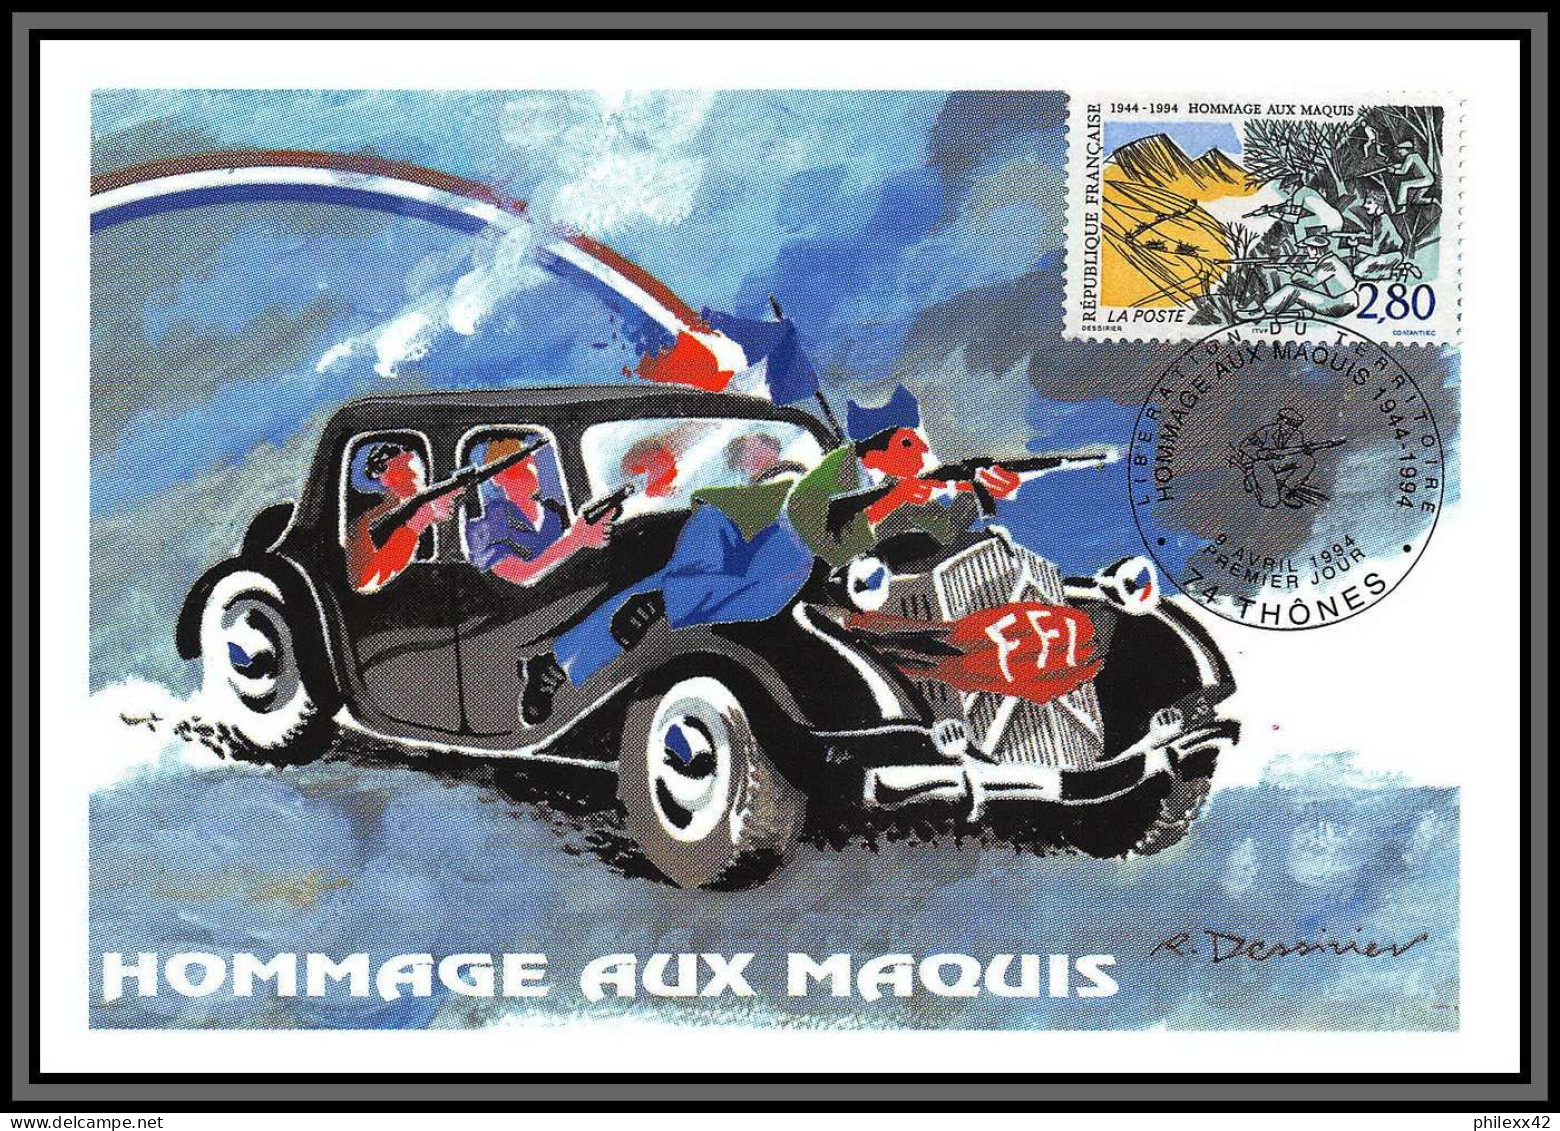 57530/ Carte maximum (card) France Année 1994 N°2854/2917 49 cartes différentes état superbe édition CEF